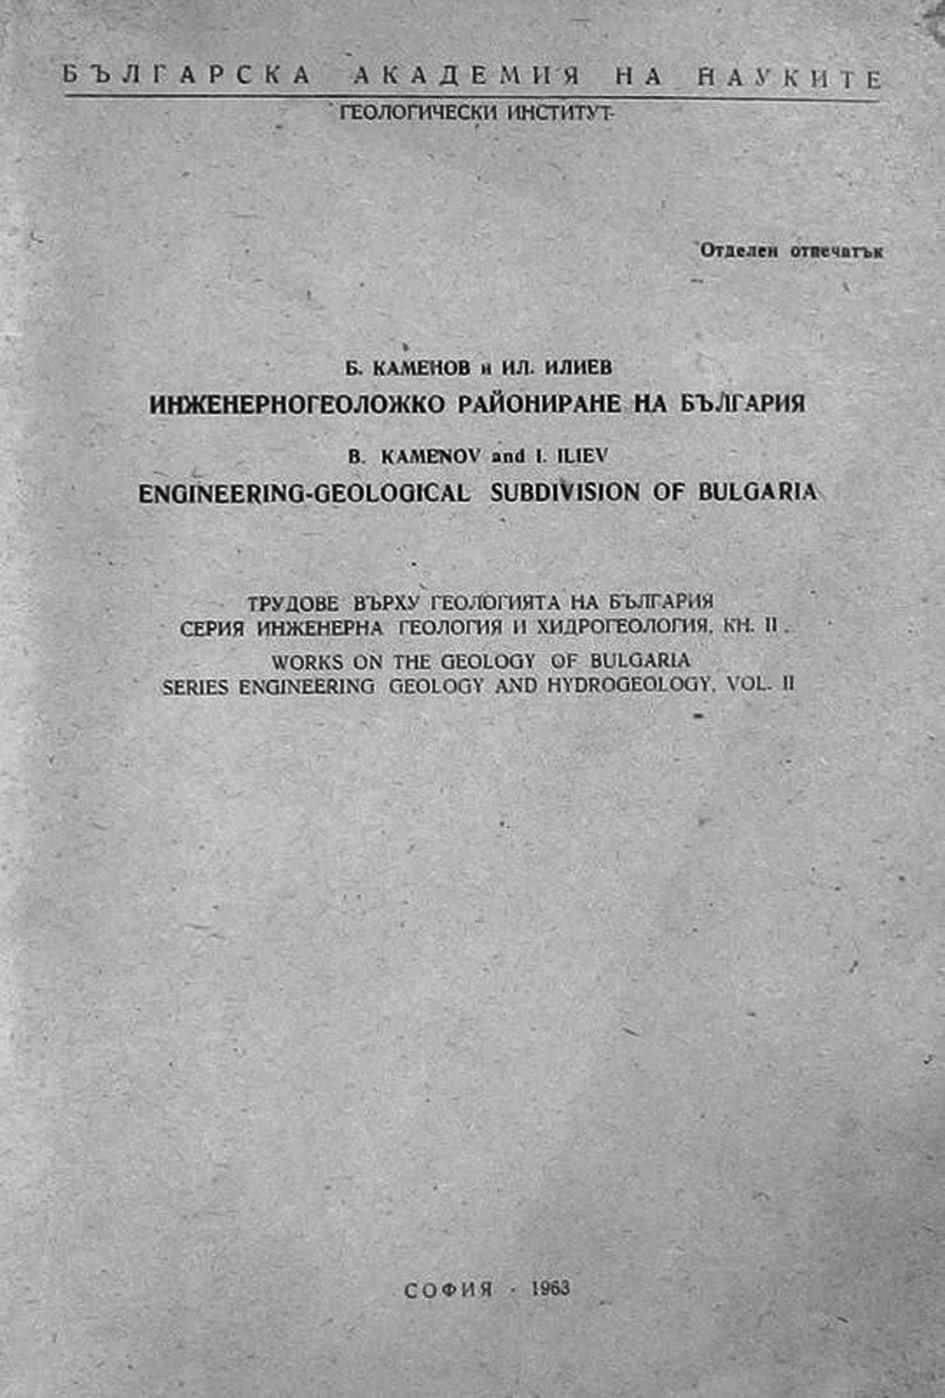 Фиг. 5. Инженерногеоложко райониране на България корица (1963) Fig. 5. Engineering-geological subdivision of Bulgaria cover (1963) al., 1979). Последната статия, в която участва д-р Б.